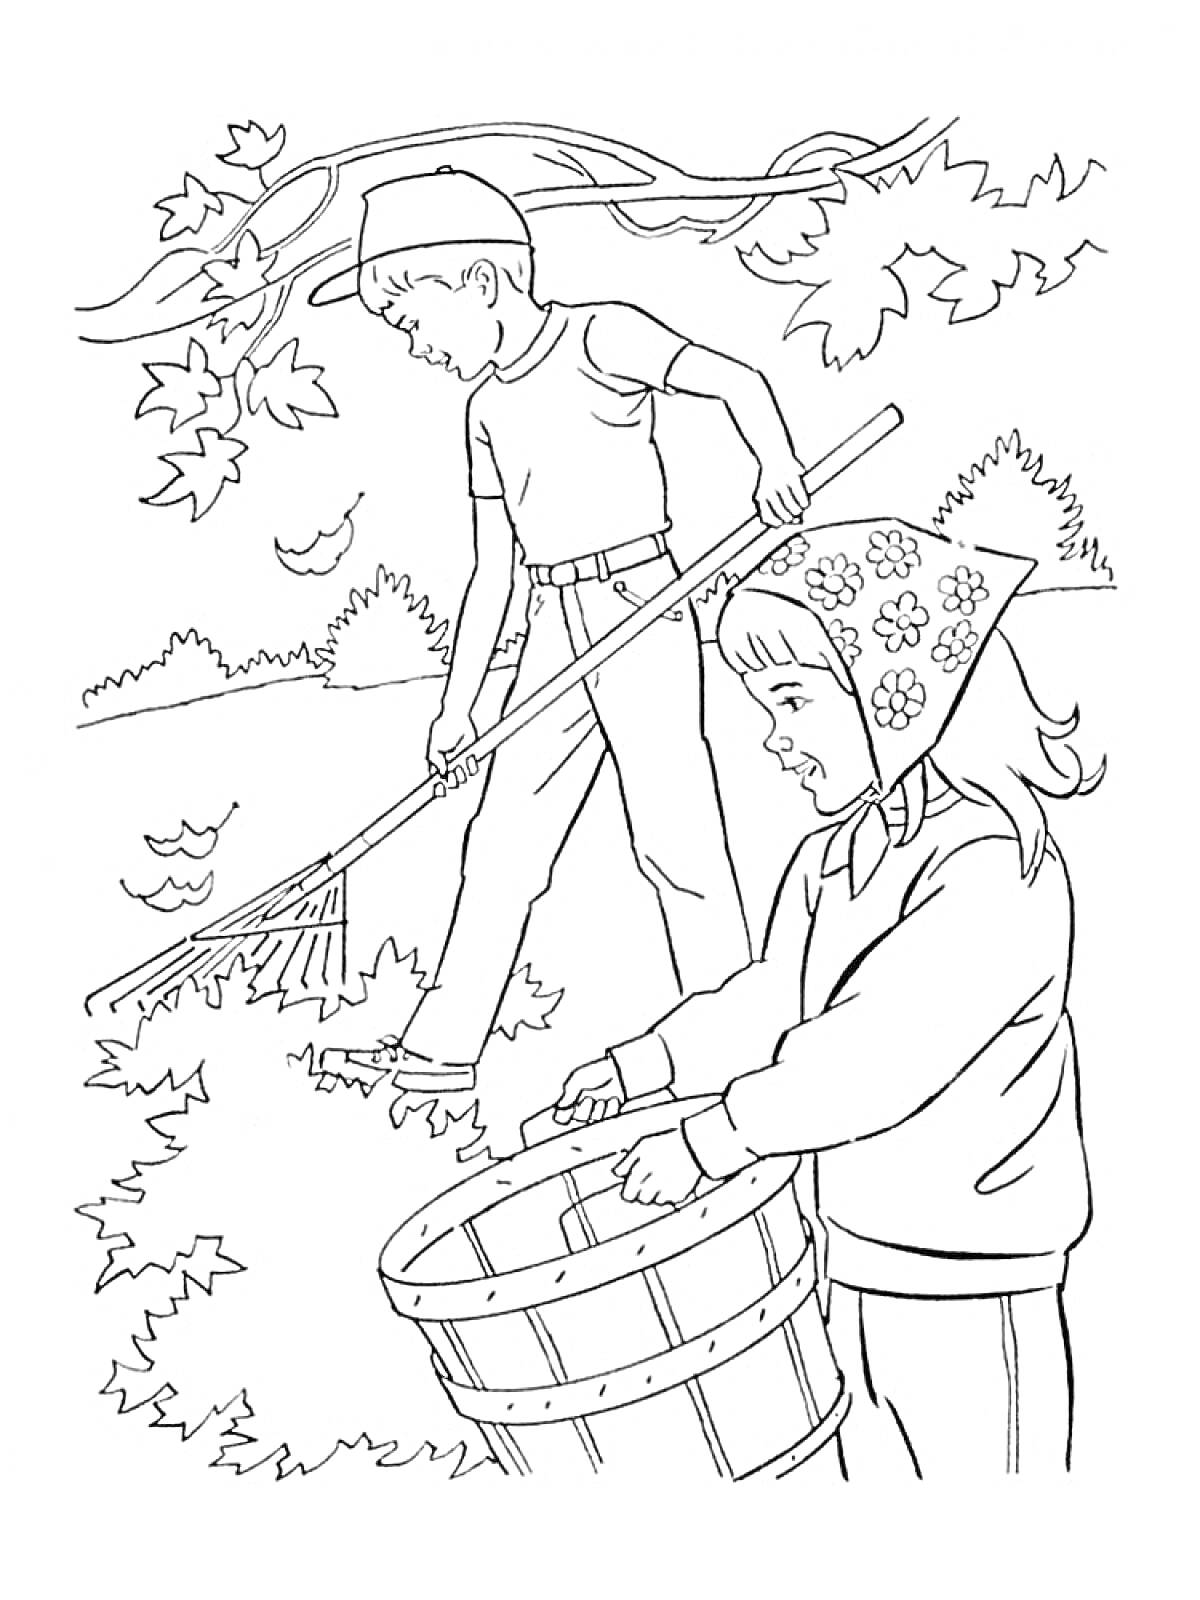 Раскраска Дети убирают опавшие листья осенью. Мальчик сгребает листья граблями, девочка держит корзину.